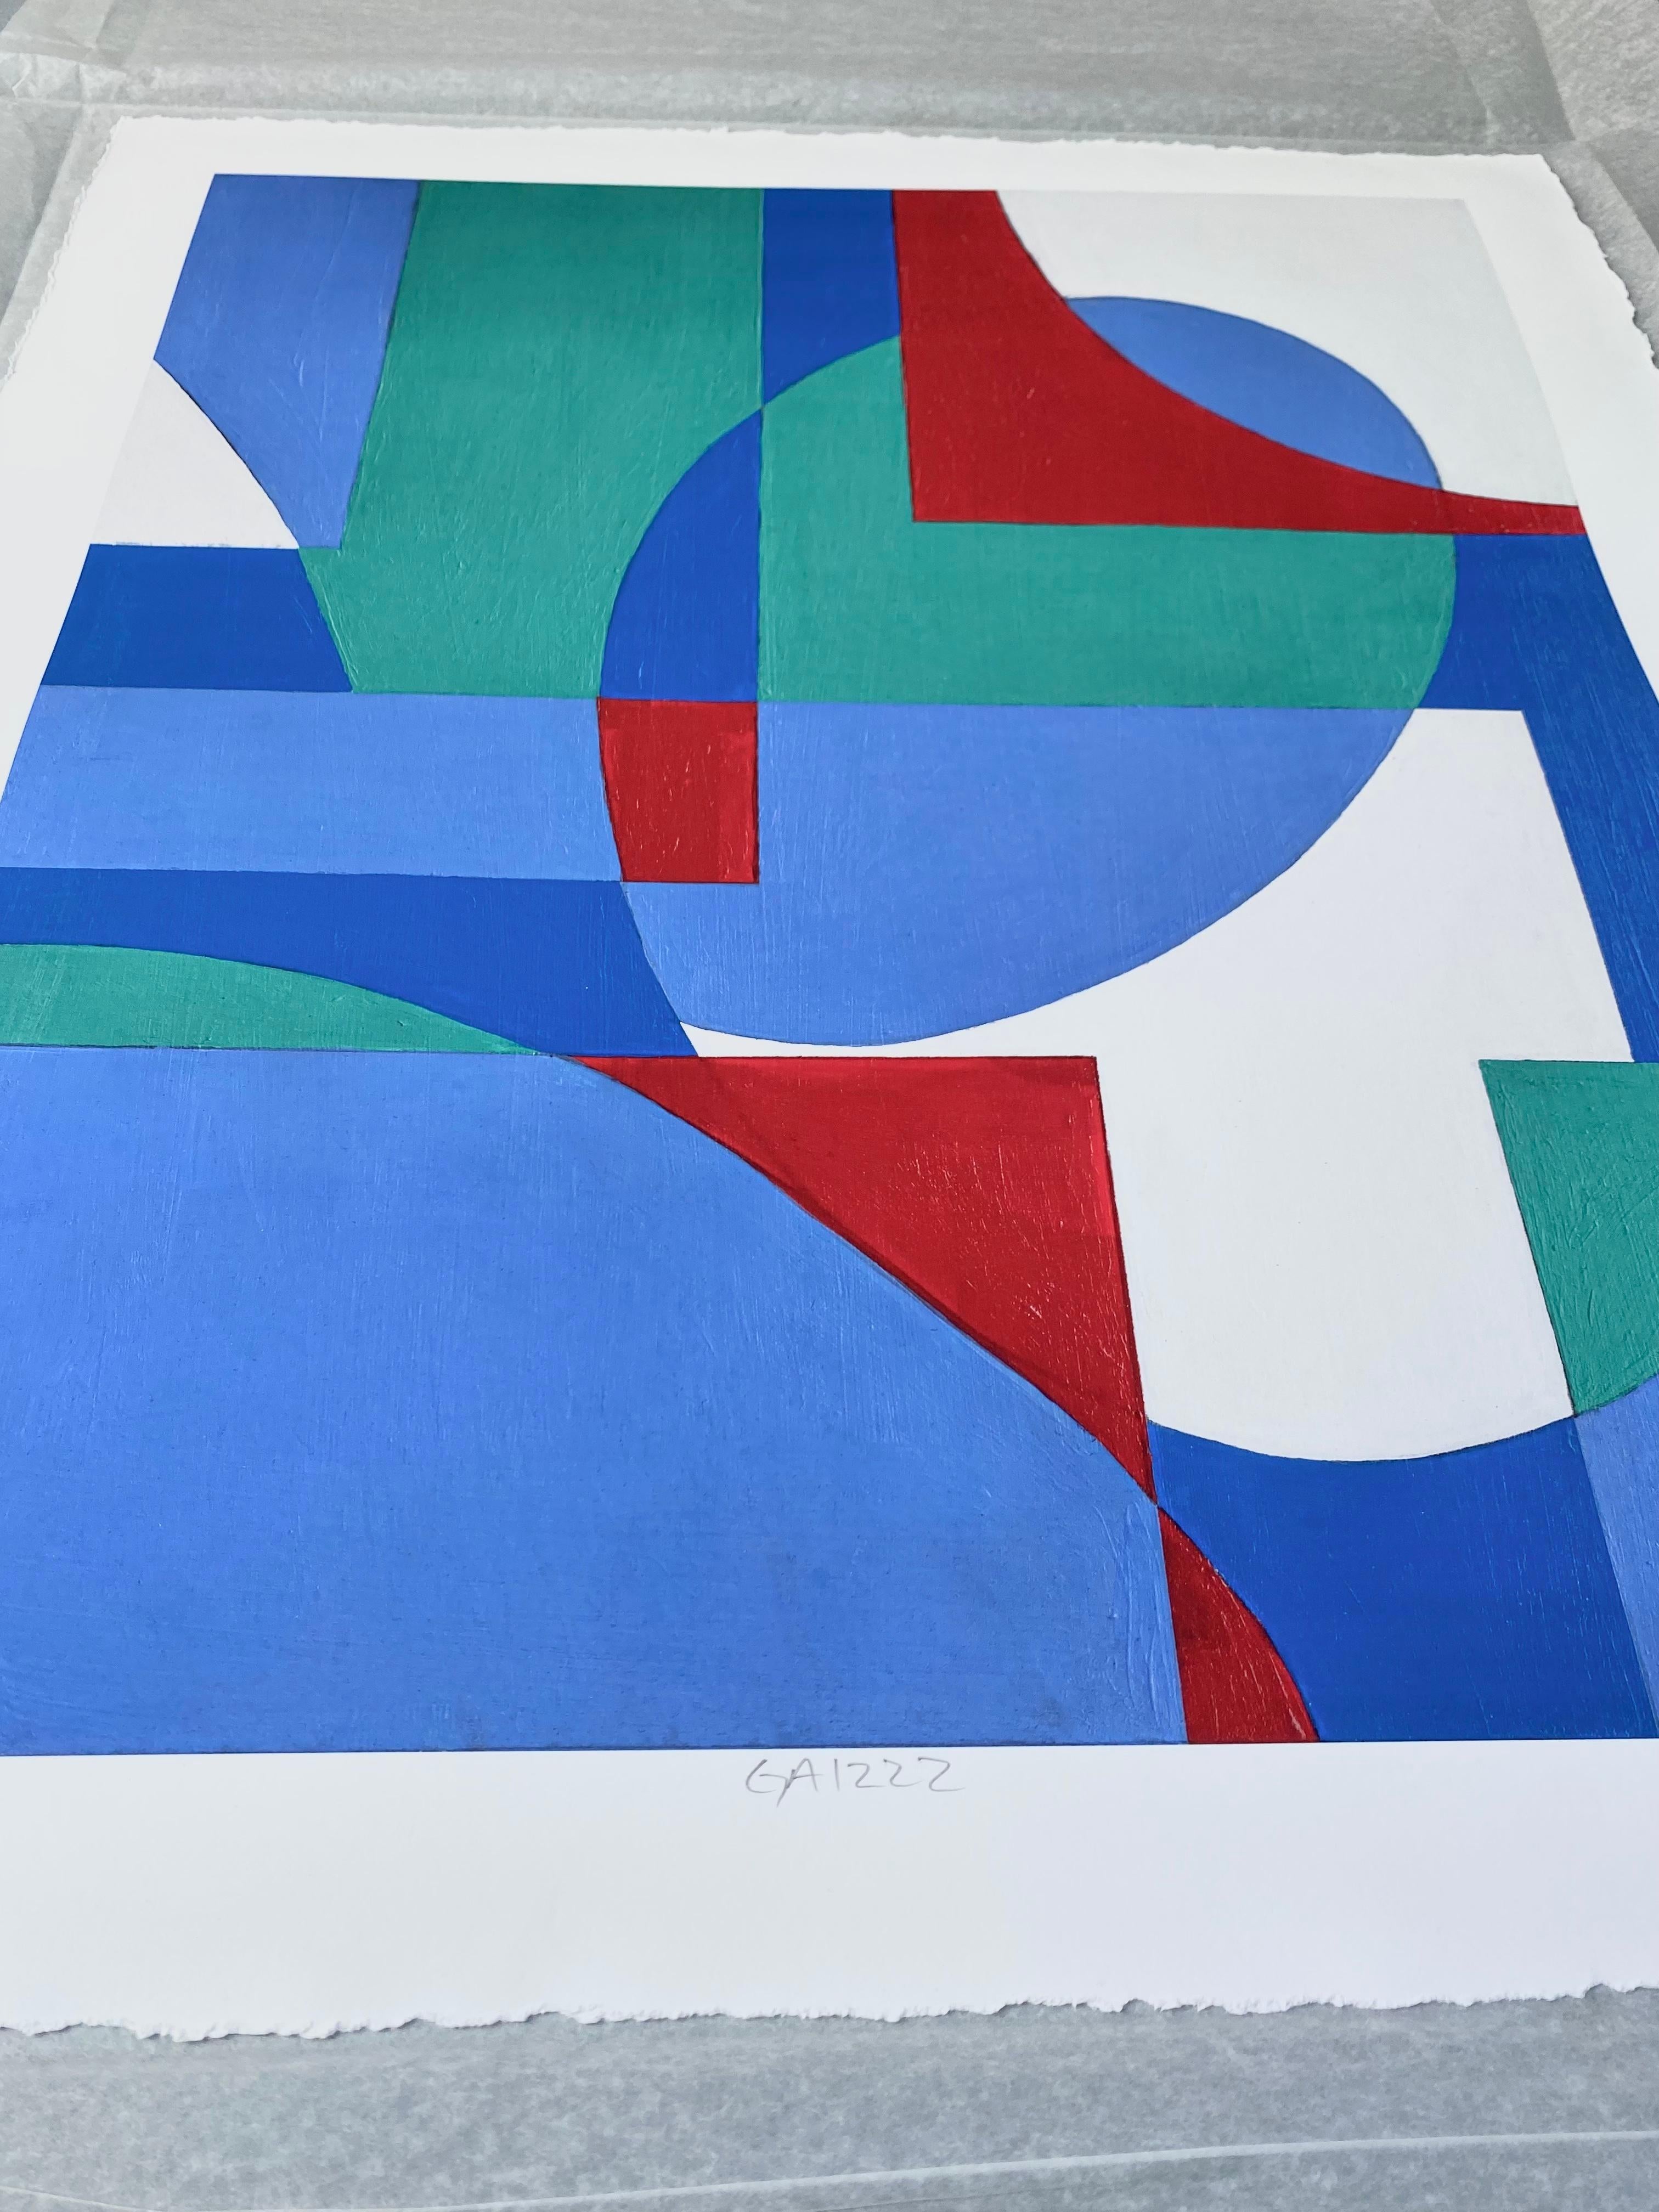 GA1222 Limited edition 2/10 giclee geometric abstraction signed print - Abstract Geometric Print by Zach Touchon